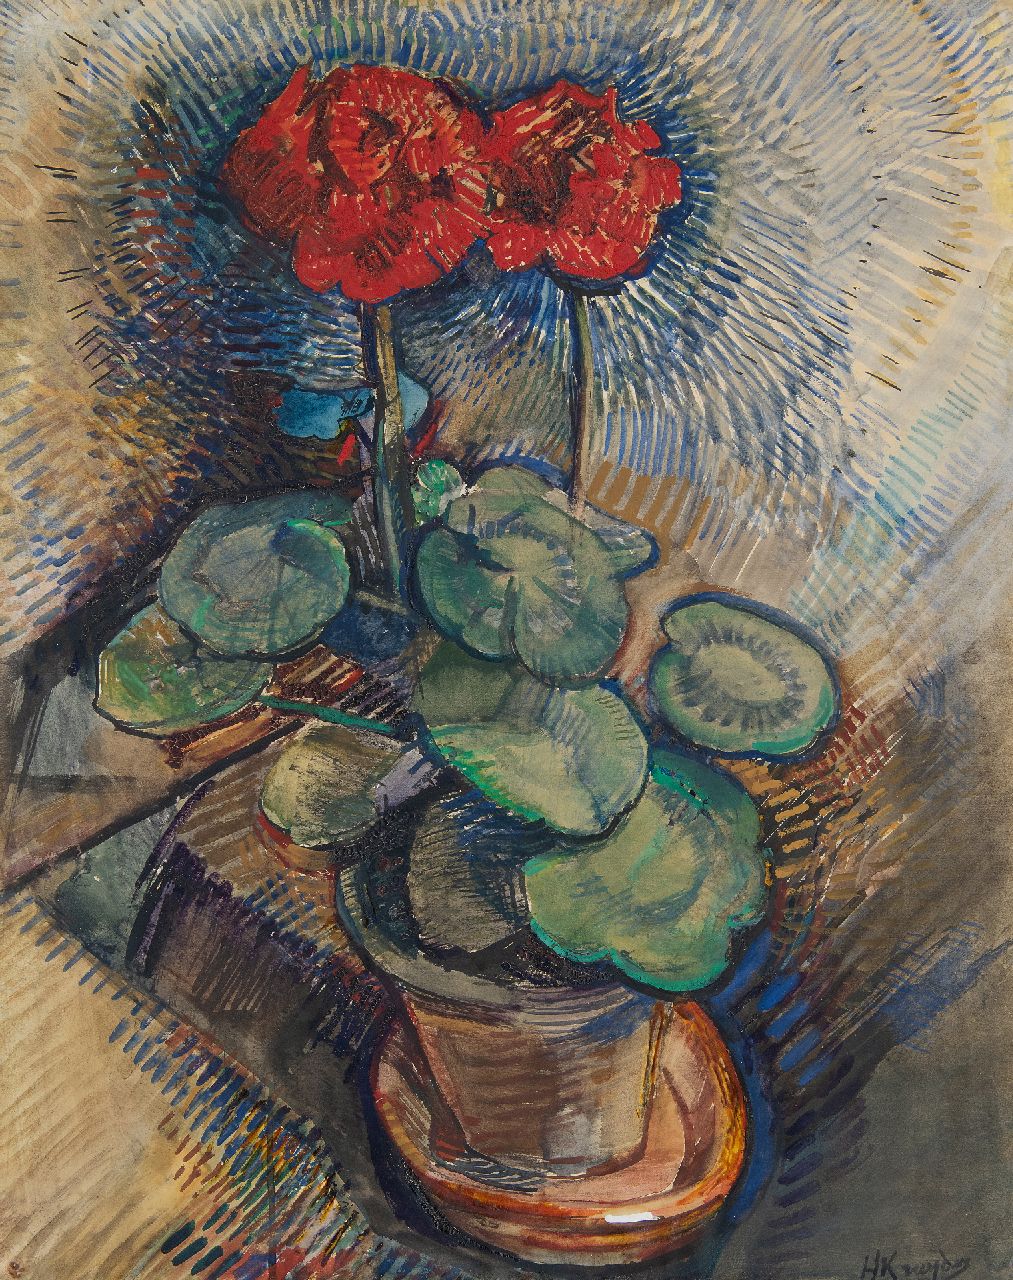 Kruyder H.J.  | 'Herman' Justus Kruyder | Aquarellen en tekeningen te koop aangeboden | Rode geranium, gouache op papier 64,6 x 49,9 cm, gesigneerd rechtsonder